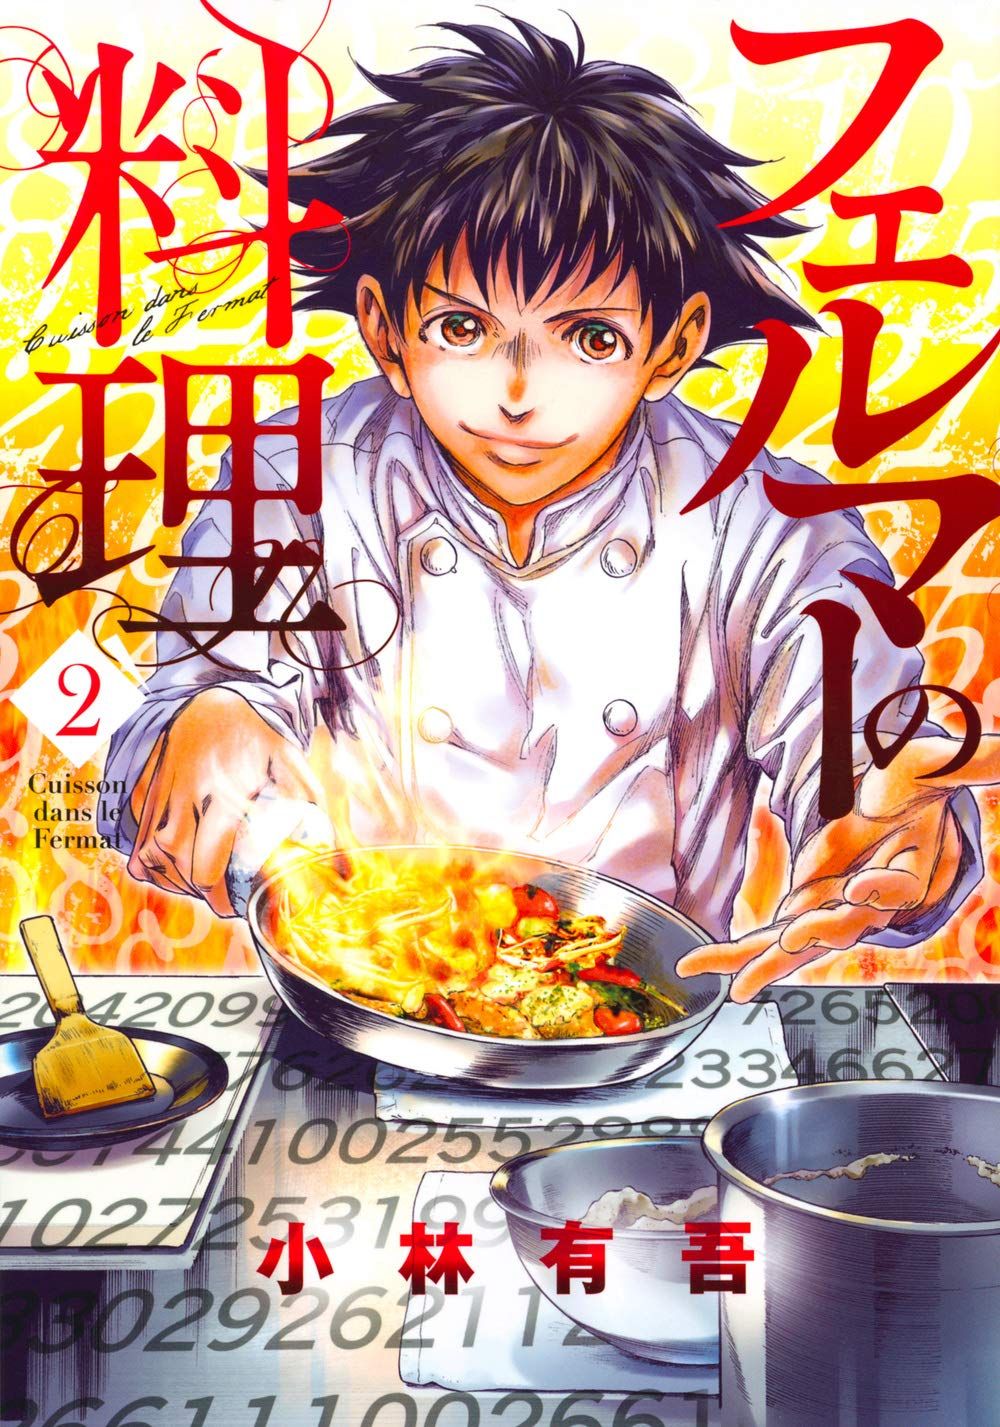 Le manga Fermat Kitchen adapté en drama3